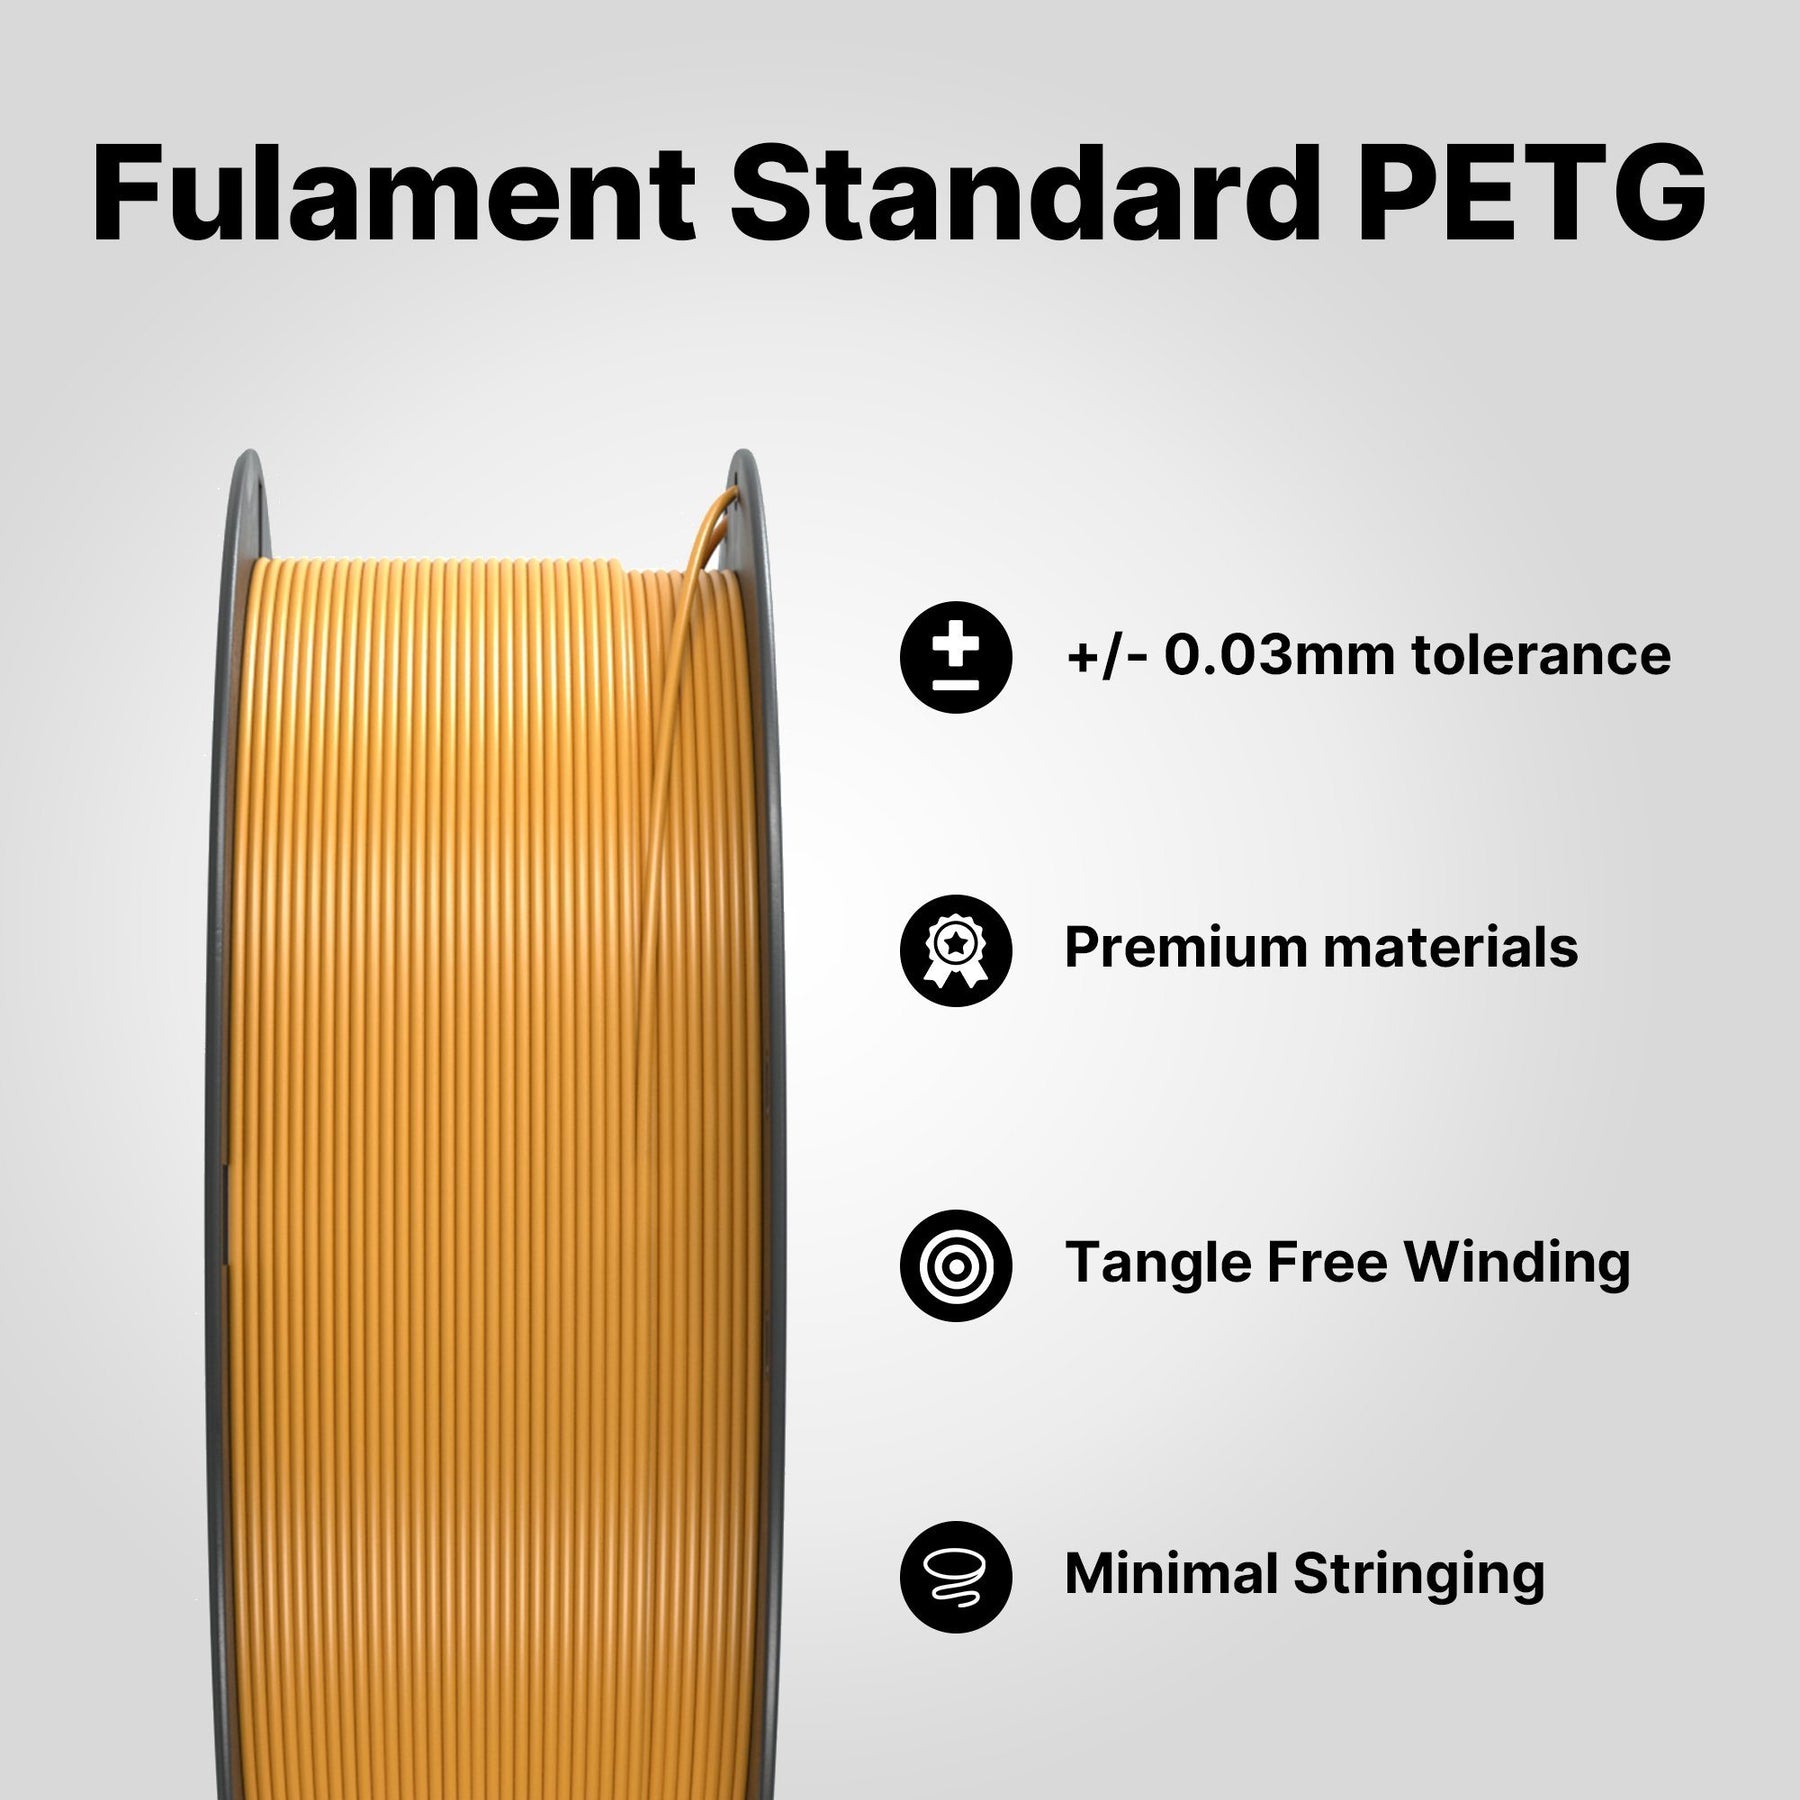 Standard PETG Series - Honey Yellow Filament Fulament